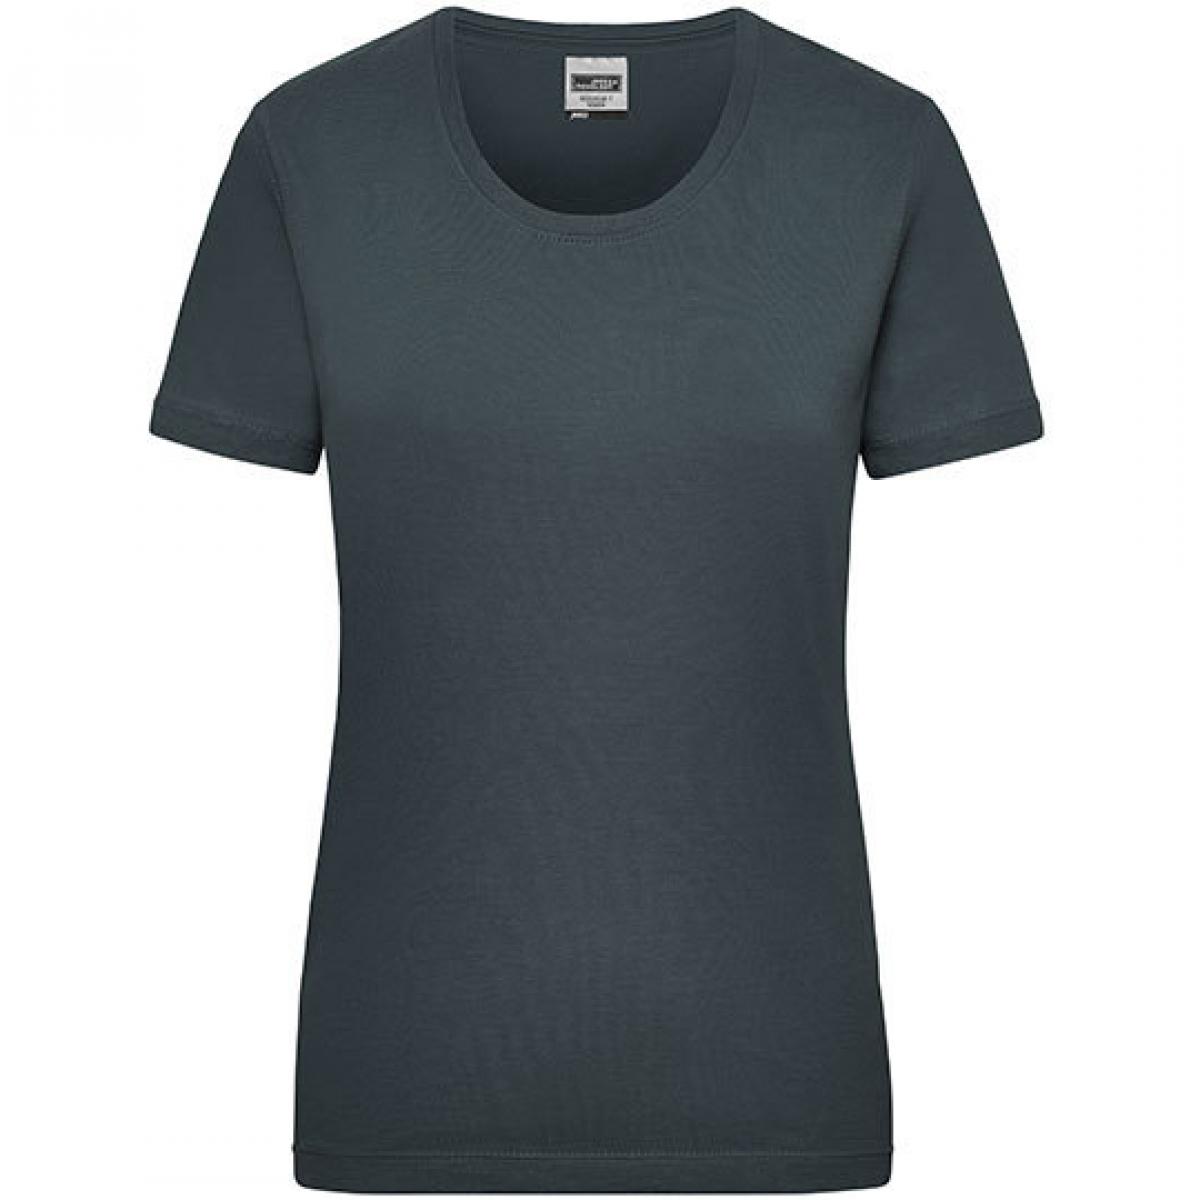 Hersteller: James+Nicholson Herstellernummer: JN 802 Artikelbezeichnung: Workwear-T Women Damen T-Shirt Farbe: Carbon